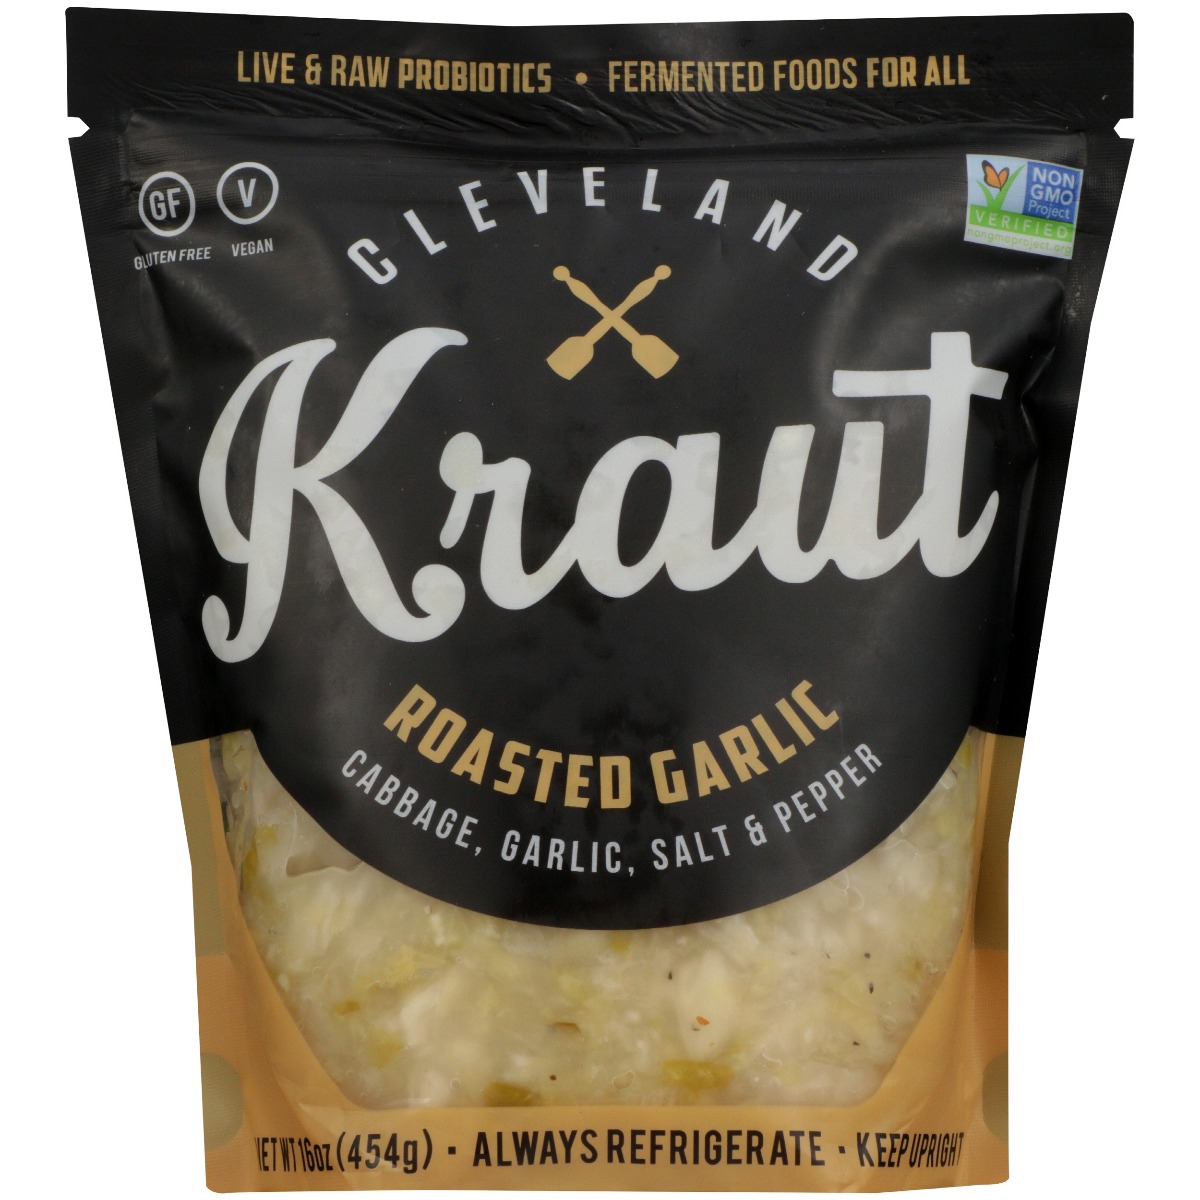 CLEVELAND KRAUT: Roasted Garlic Sauerkraut, 16 oz - 0869982000053